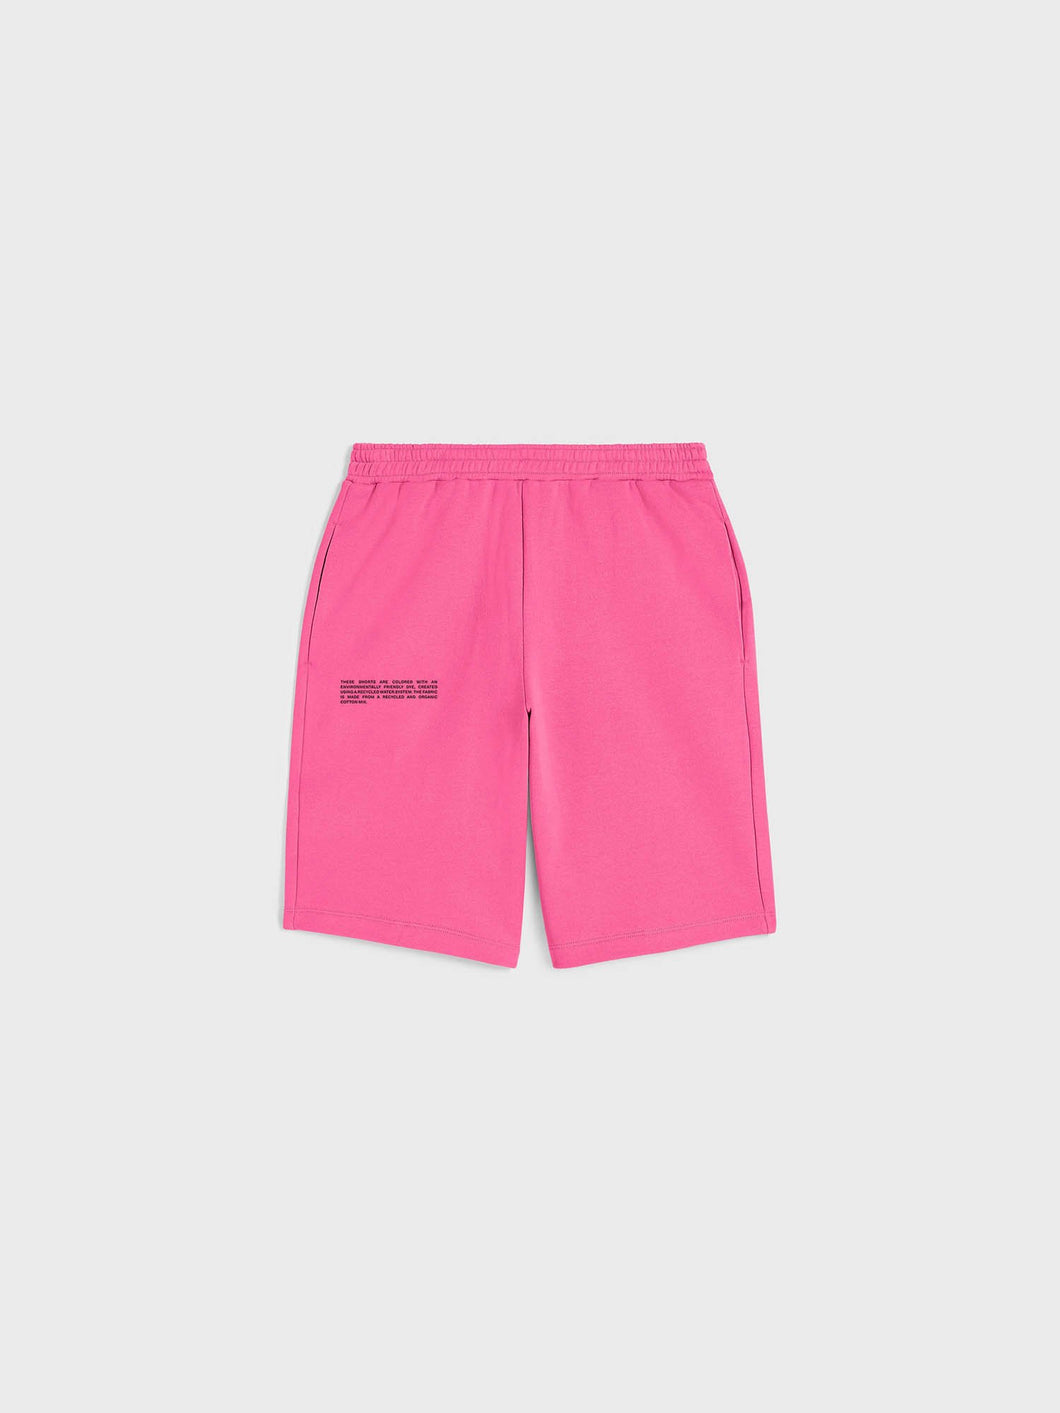 Flamingo-Rosa lange Shorts